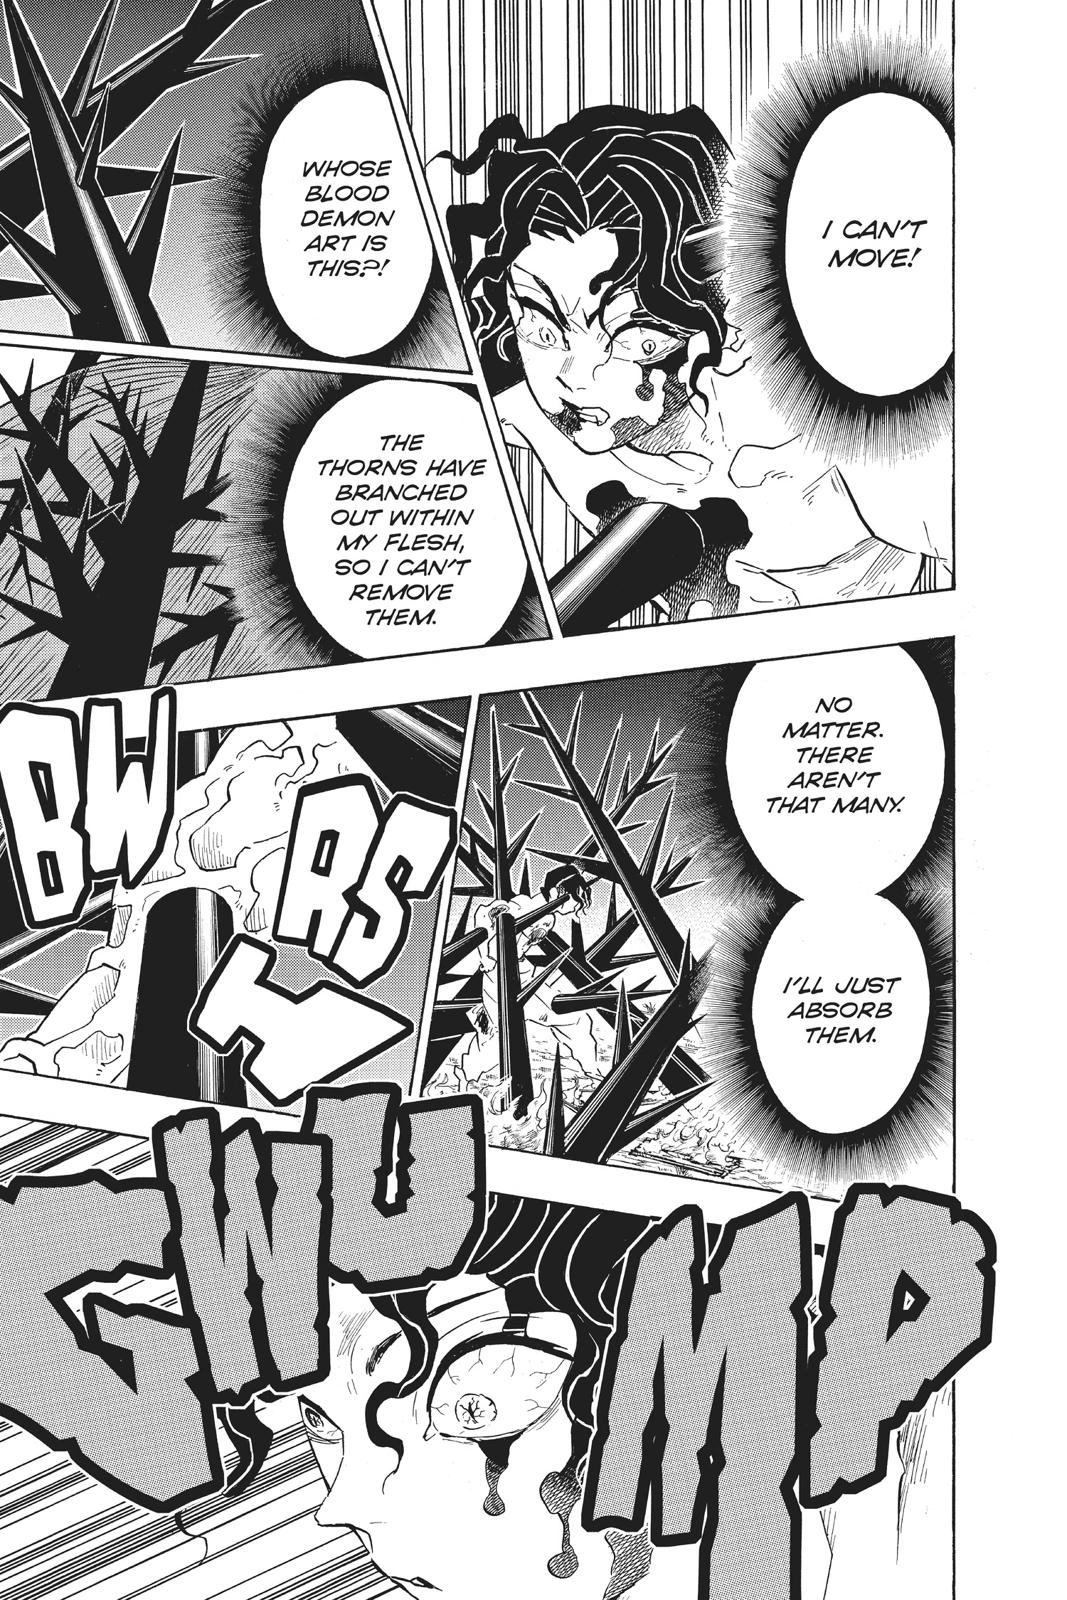 Demon Slayer Manga Manga Chapter - 138 - image 7